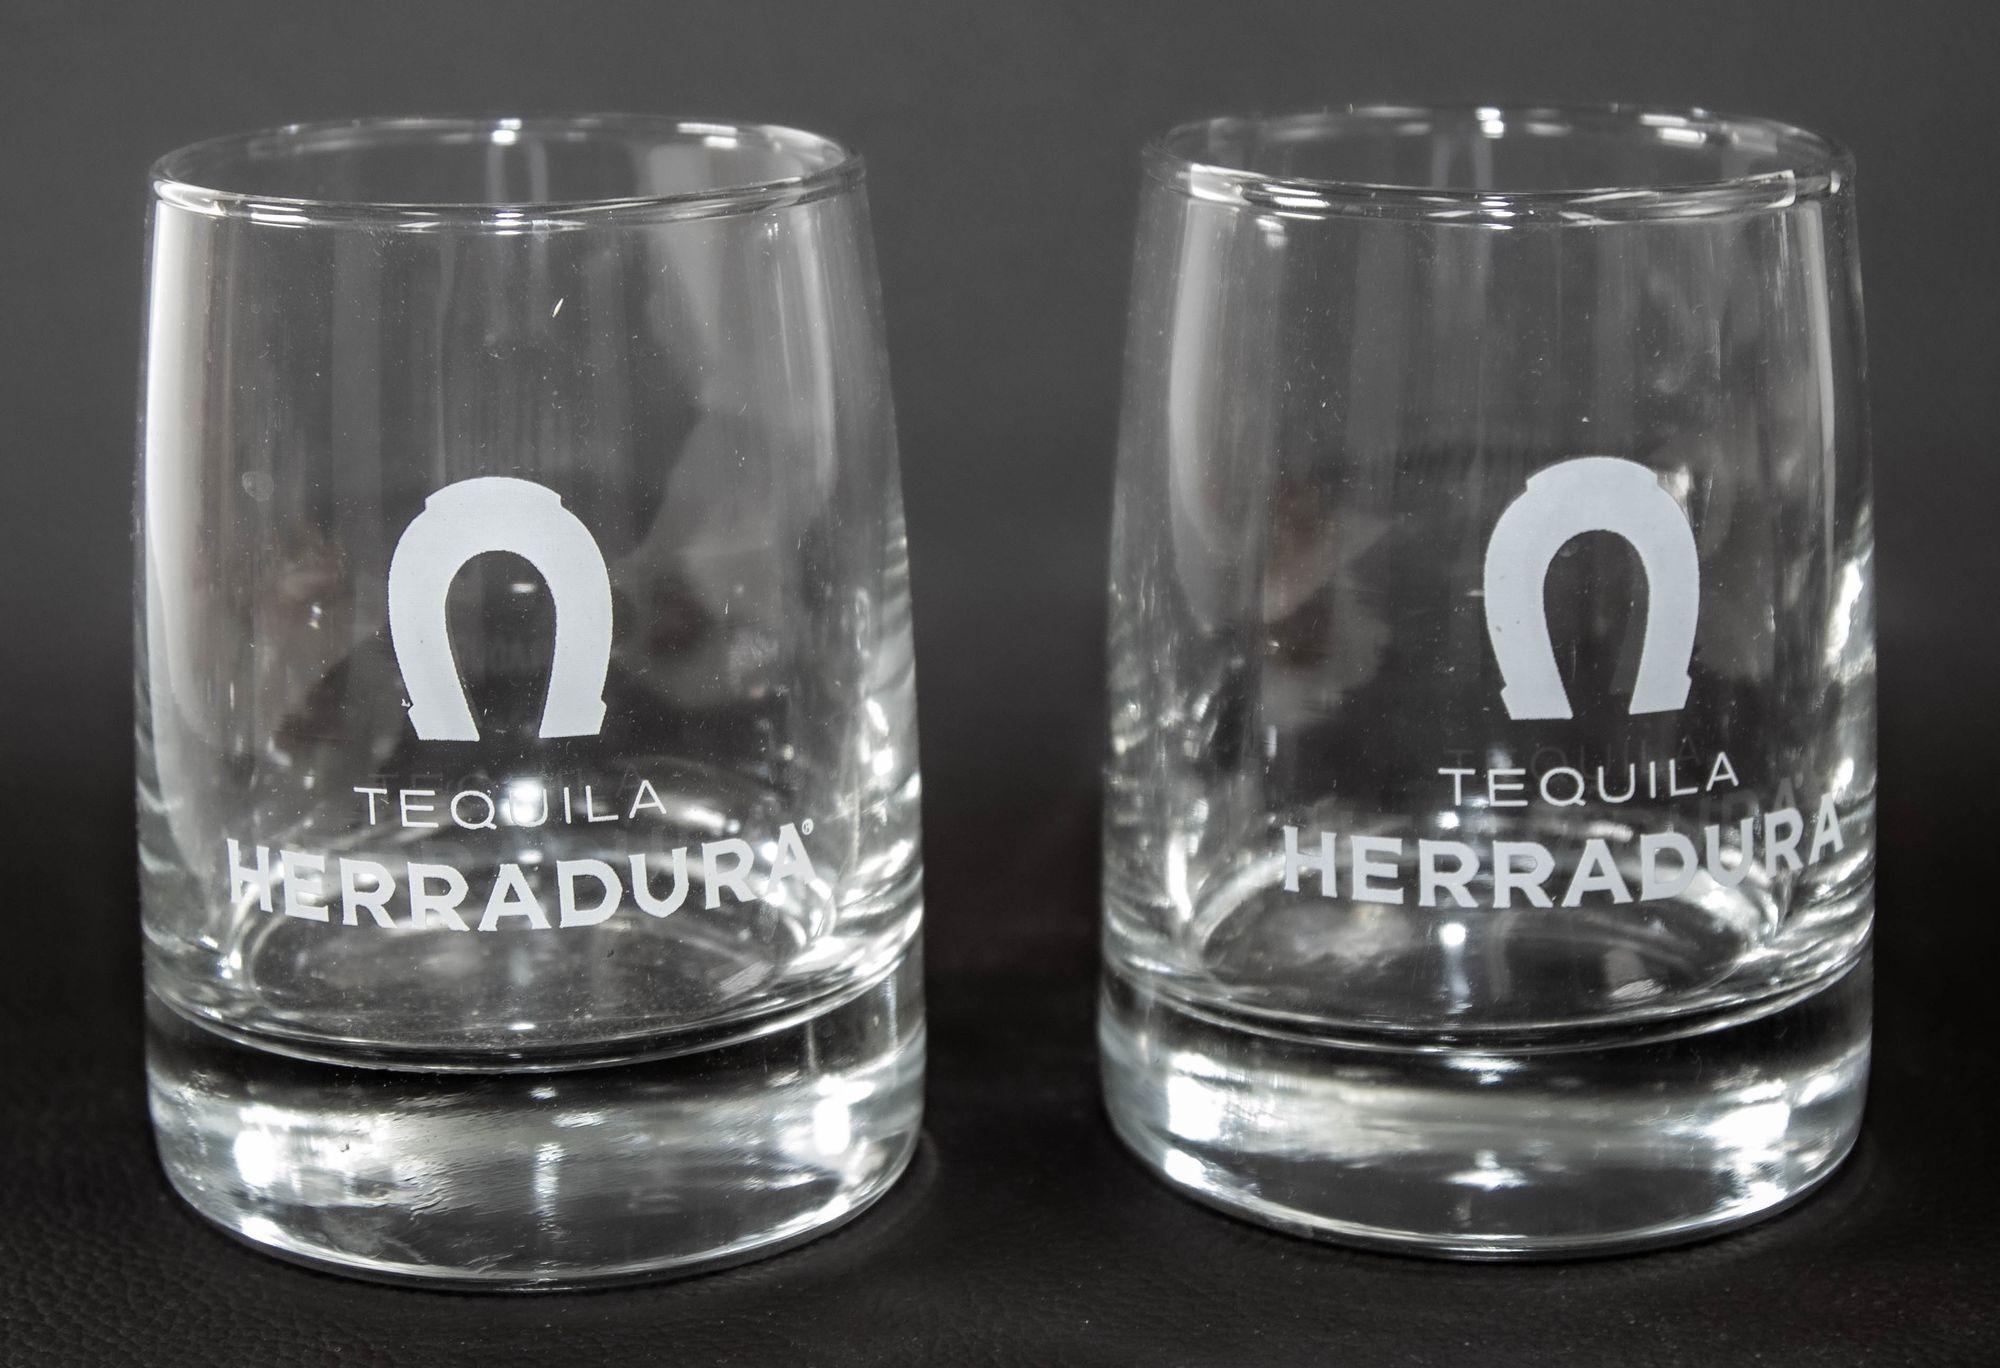 Tumbers Vintage Herradura Logo Lowball Lot de 4 verres gravés au laser, de couleur claire, avec le logo de la Tequila Herradura et du fer à cheval gravé en blanc givré.
Lot de 4 verres à pied transparents conçus pour la Tequila Herradura.
Les verres